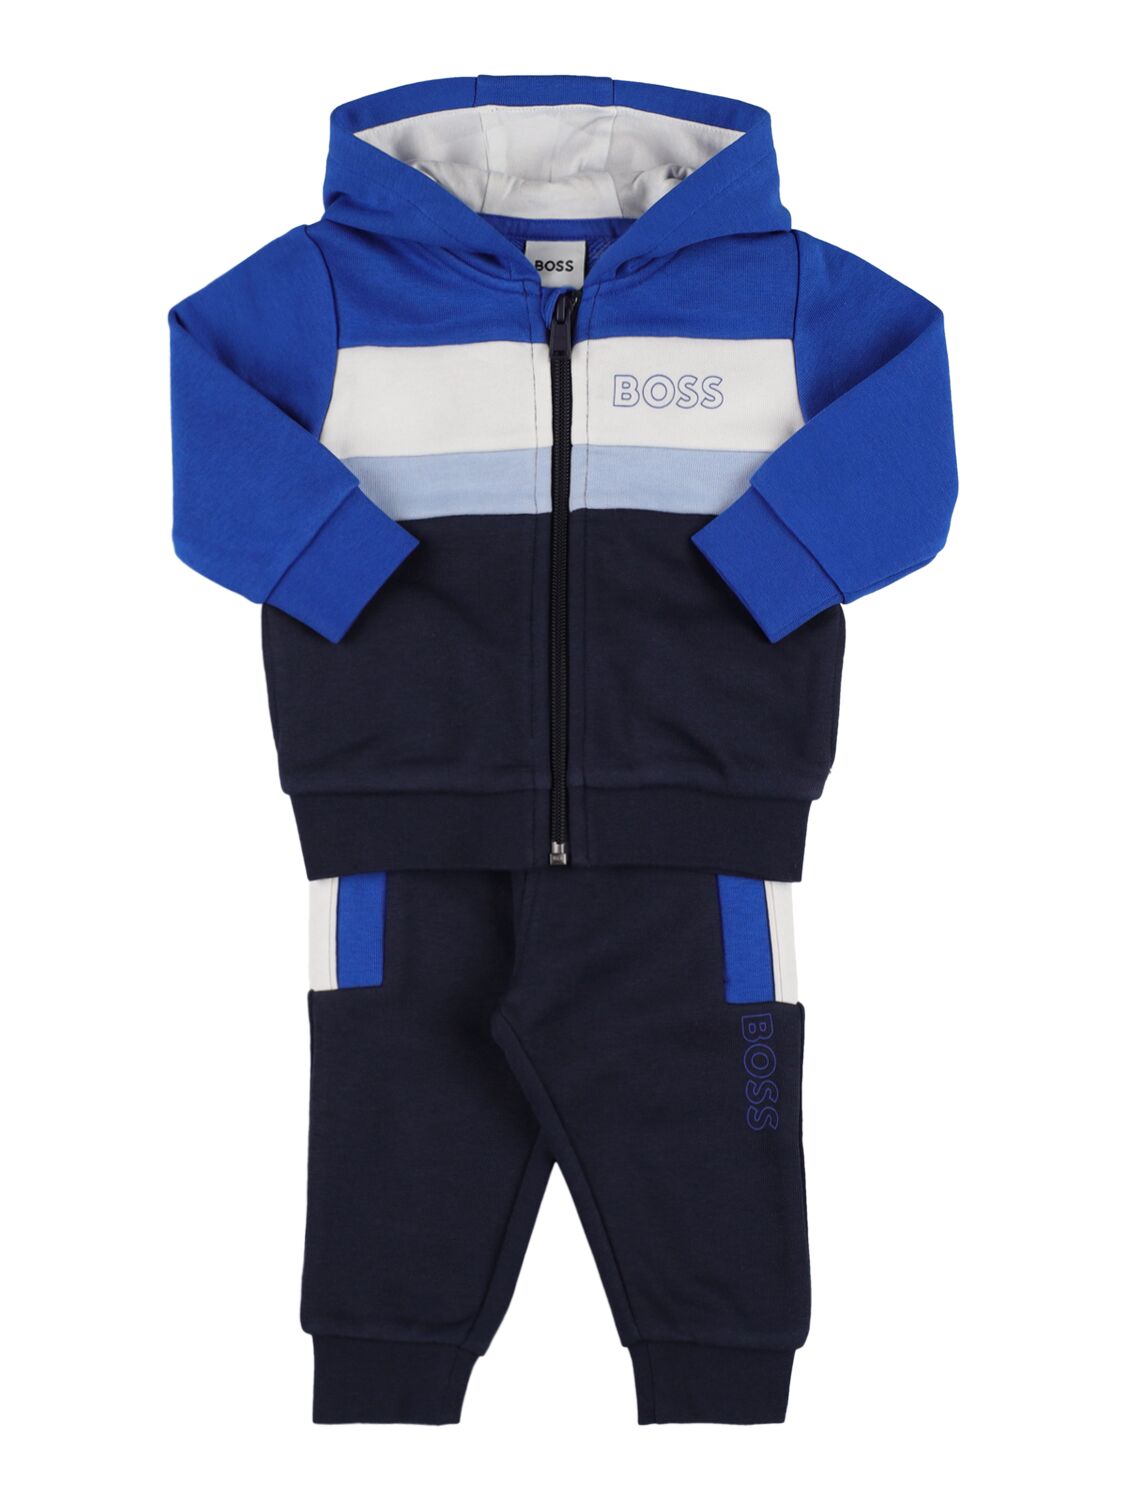 Hugo Boss Kids' Logo Print Zip-up Hoodie & Sweatpants In Blue,navy